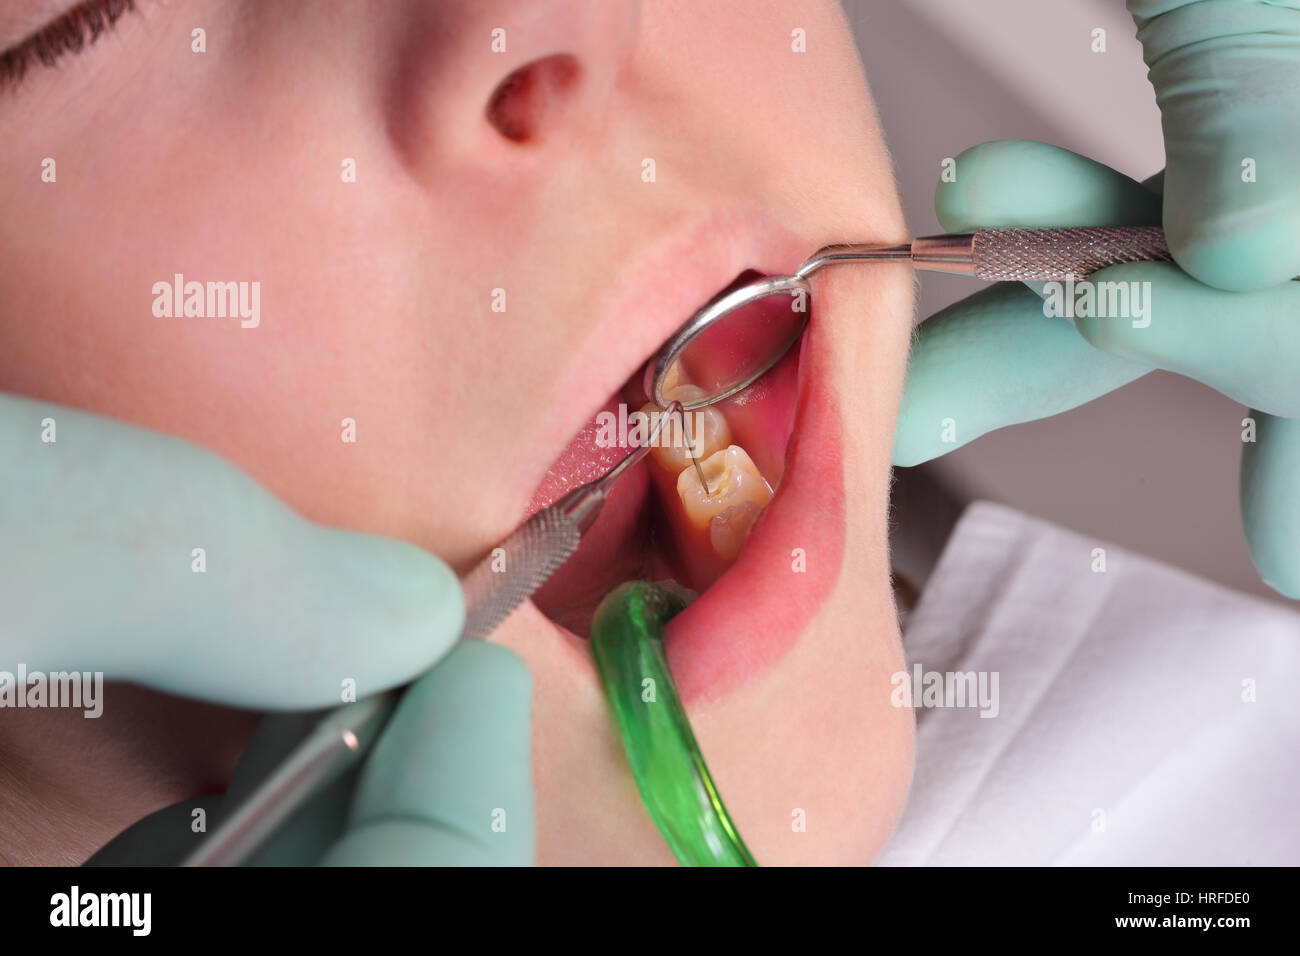 Nahaufnahme von Loch, Hohlraum im Zahn nach dem Bohren, bei der Besetzung  von dental Werkzeug und Spiegel Stockfotografie - Alamy